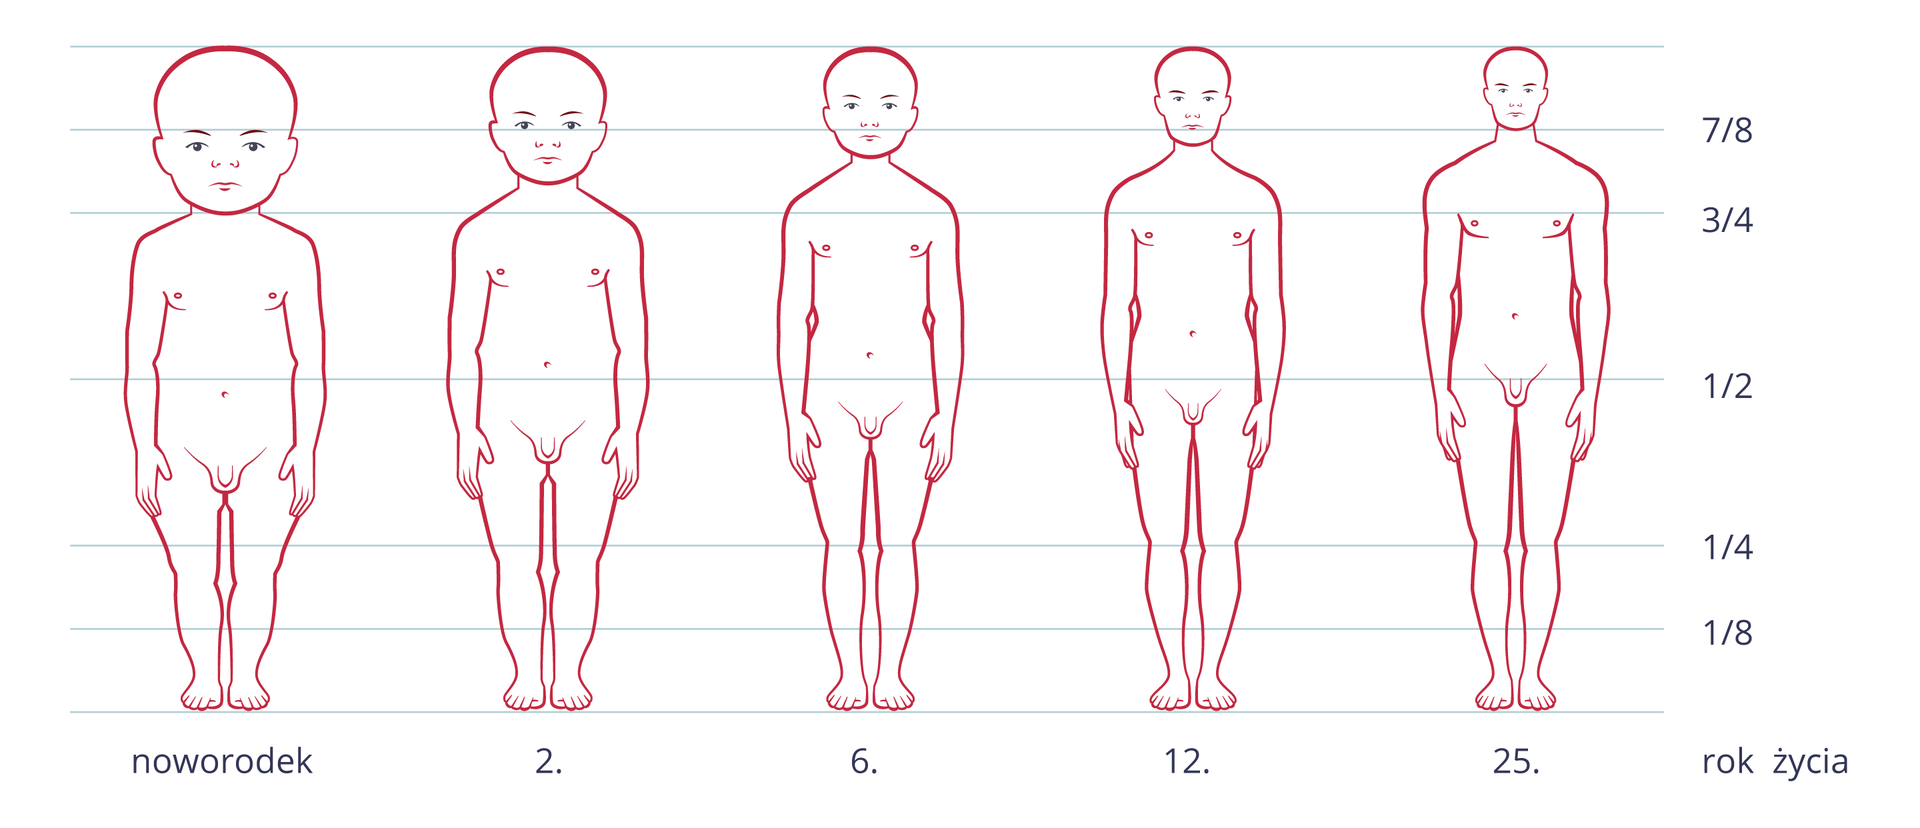 Ilustracja przedstawia zarysy zmieniającej się sylwetki człowieka od narodzin do dorosłości. Na osi X podpisane lata. Linie poziome wskazują proporcje ciała, wyrażone ułamkami. W miarę dorastania zmieniają się proporcje wielkości głowy w stosunku do długości ciała.